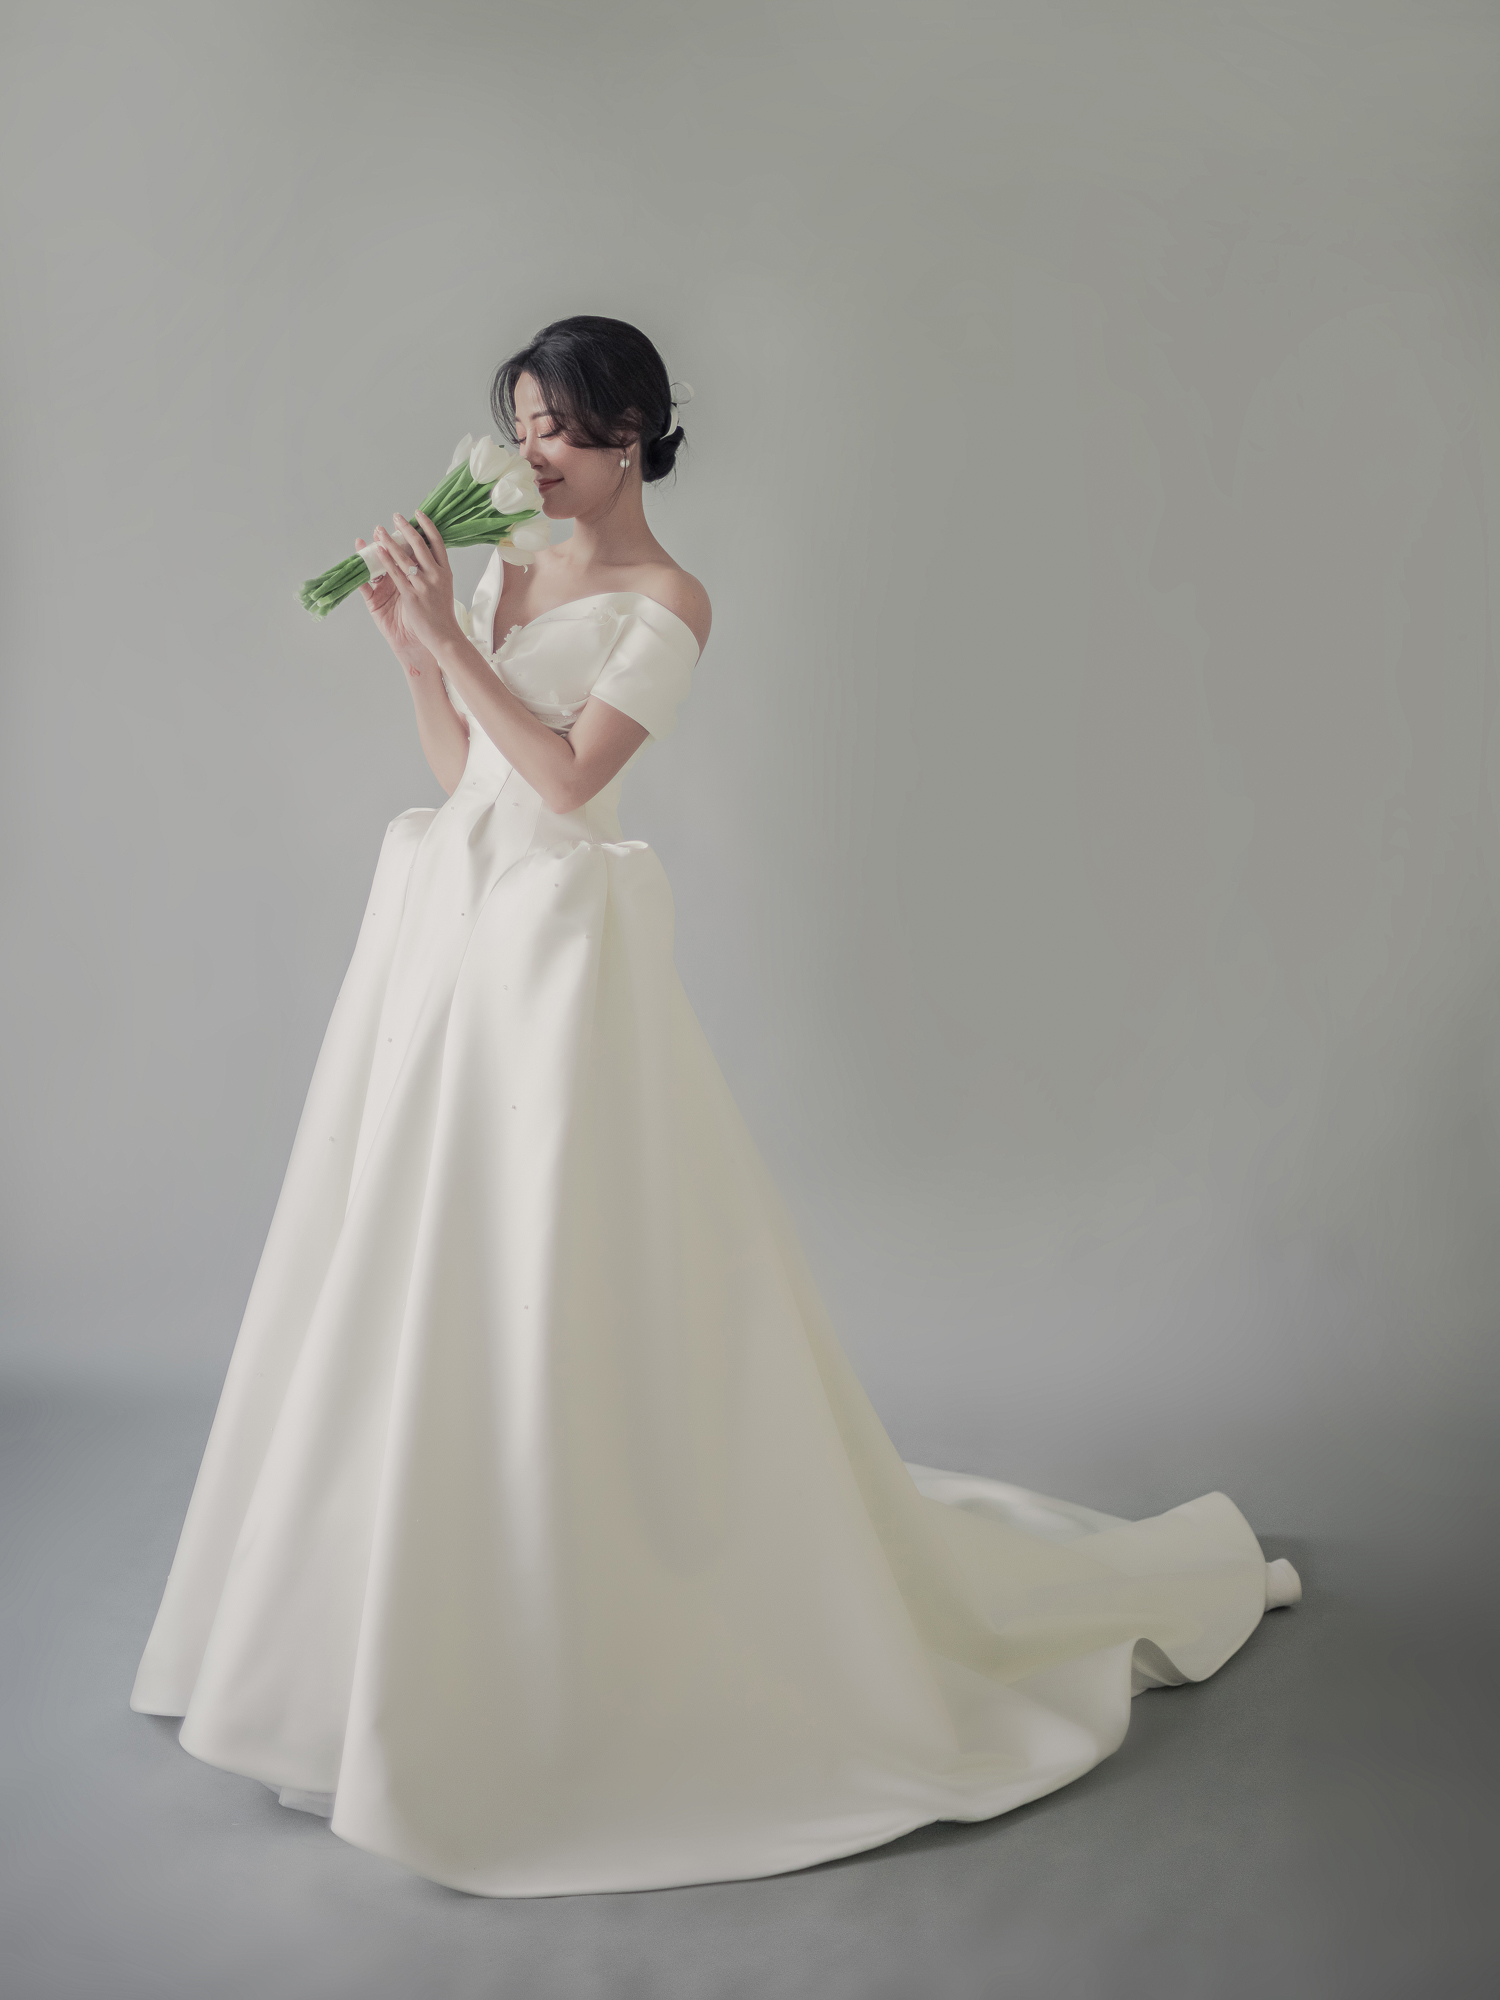 Hé lộ bộ ảnh cưới của Karen Nguyễn cùng ông xã: Áo cưới được đính kết hơn 1000 viên pha lê - ảnh 6